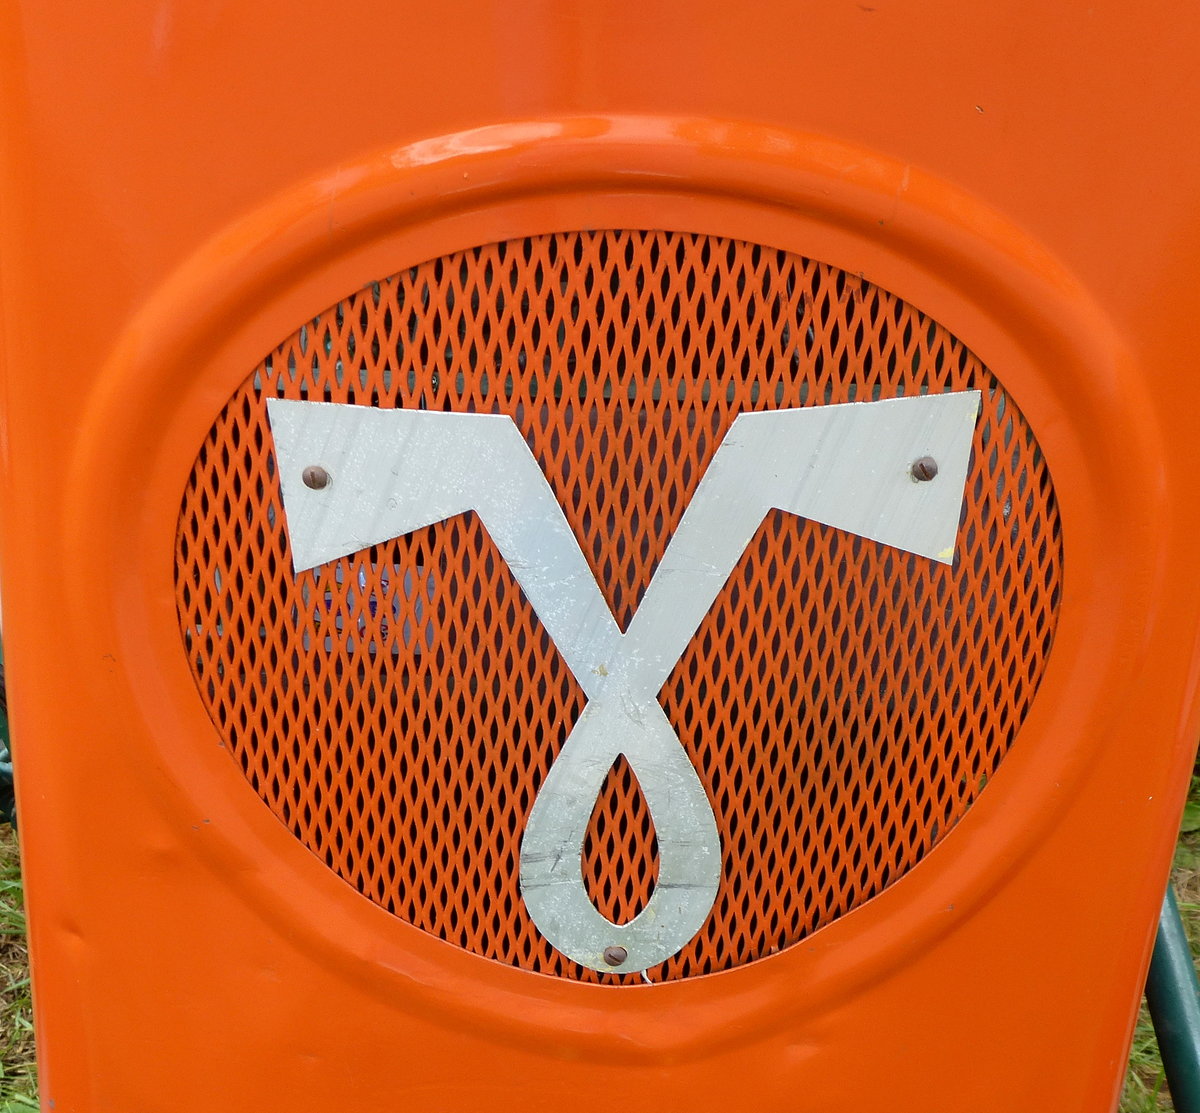 V Vendeuvre, Symbol am Khler eines Oldtimer-Traktors von 1959 aus Frankreich, die Firma wurde vor dem II.Weltkrieg gegrndet und 1959 von der US-amerikanischen Firma Allis-Chalmers bernommen, Mai 2016